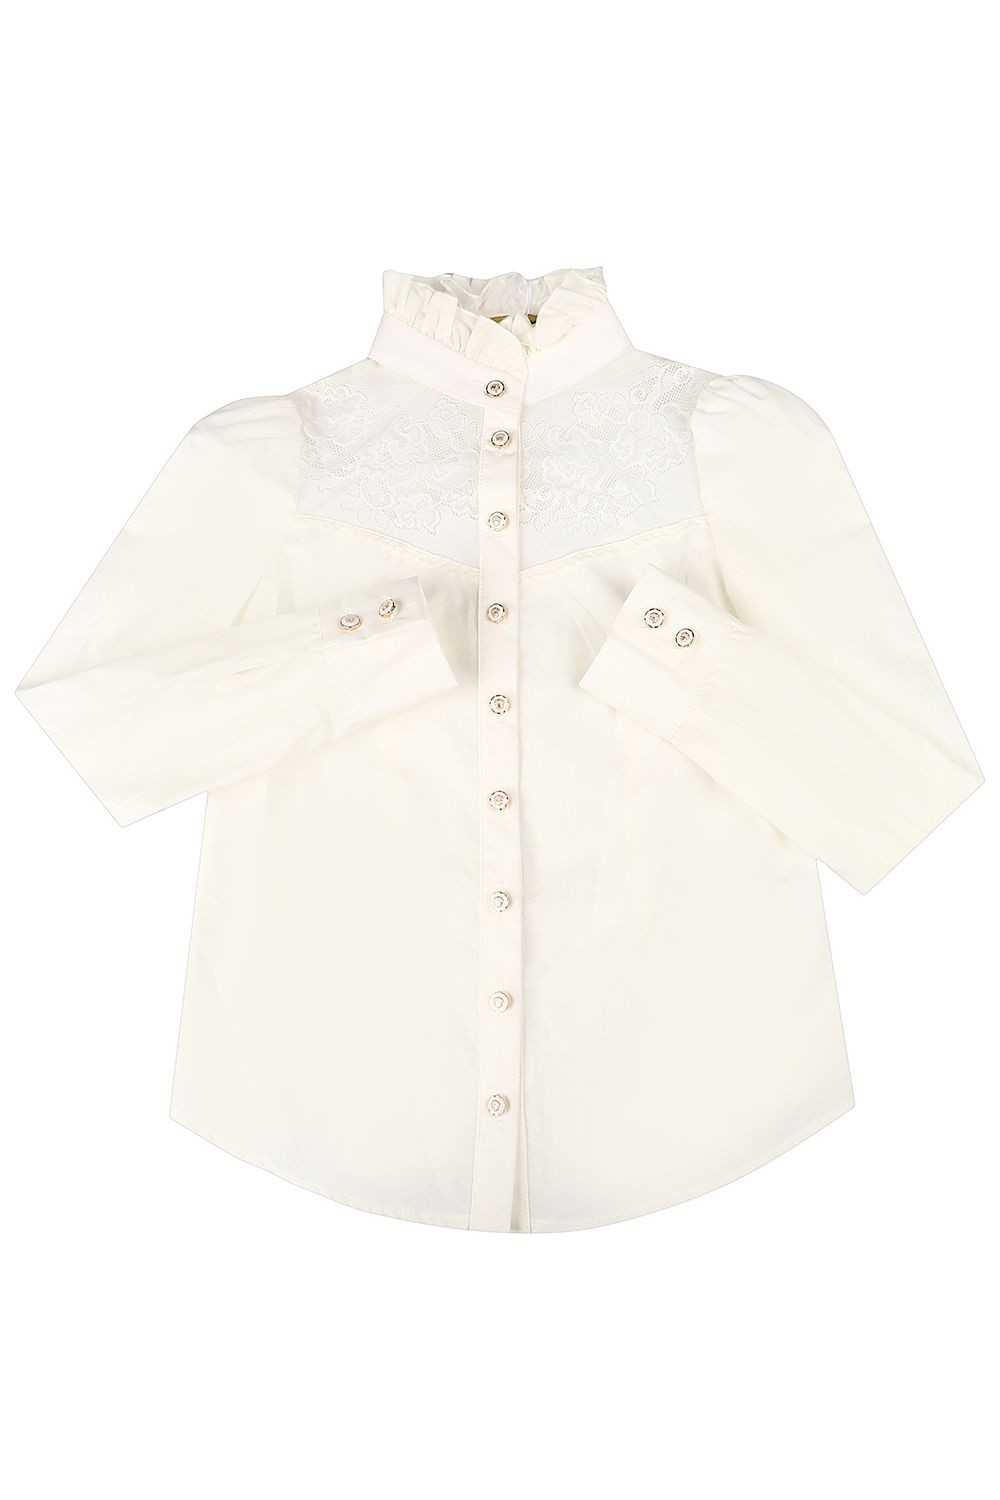 Блуза Маленькая Леди, размер 122, цвет белый - фото 1